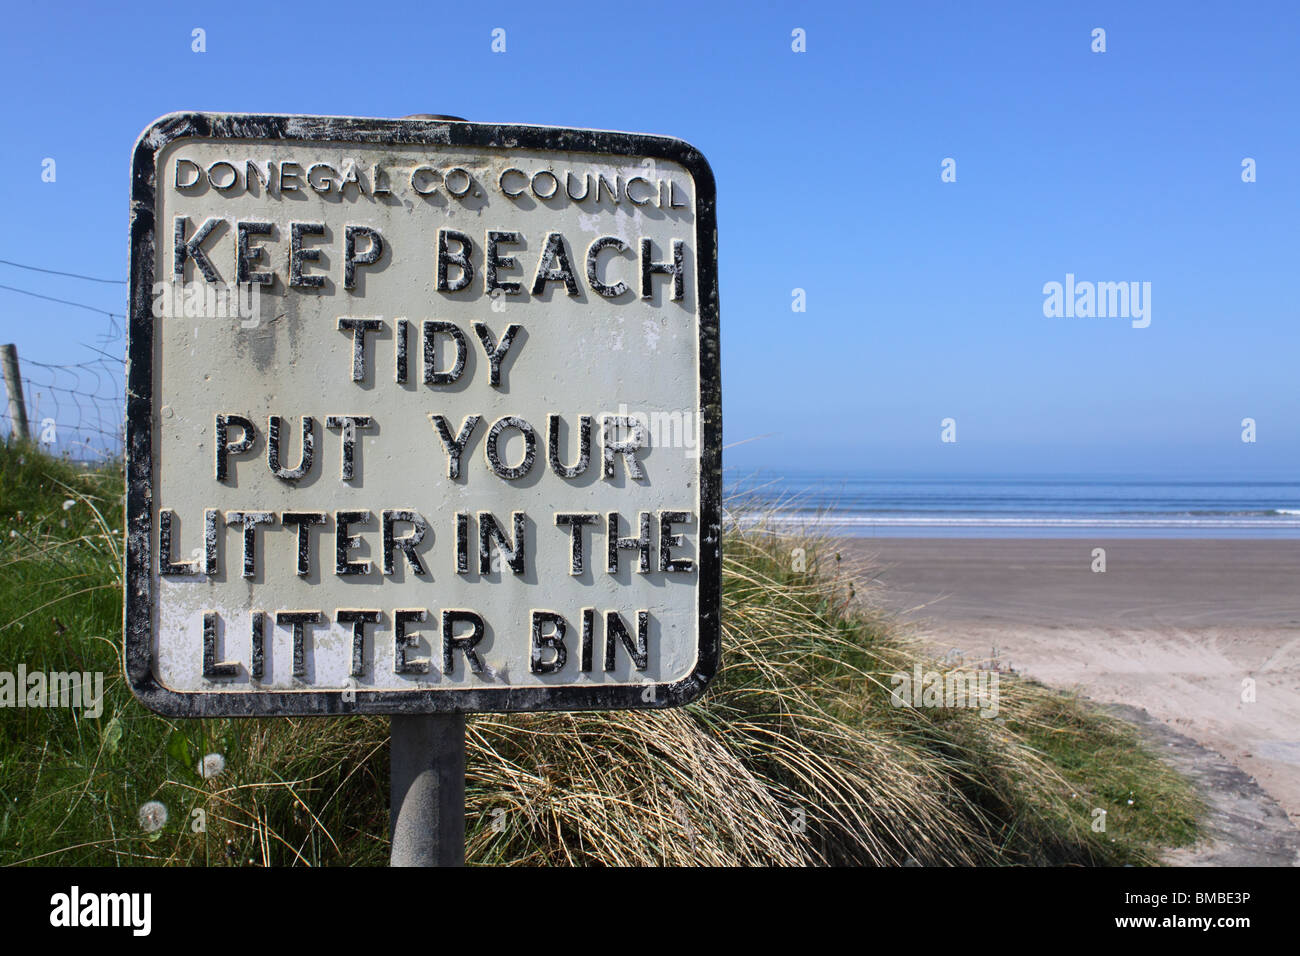 'Beach' tidy signe à Rossnowlagh, comté de Donegal, Irlande Banque D'Images